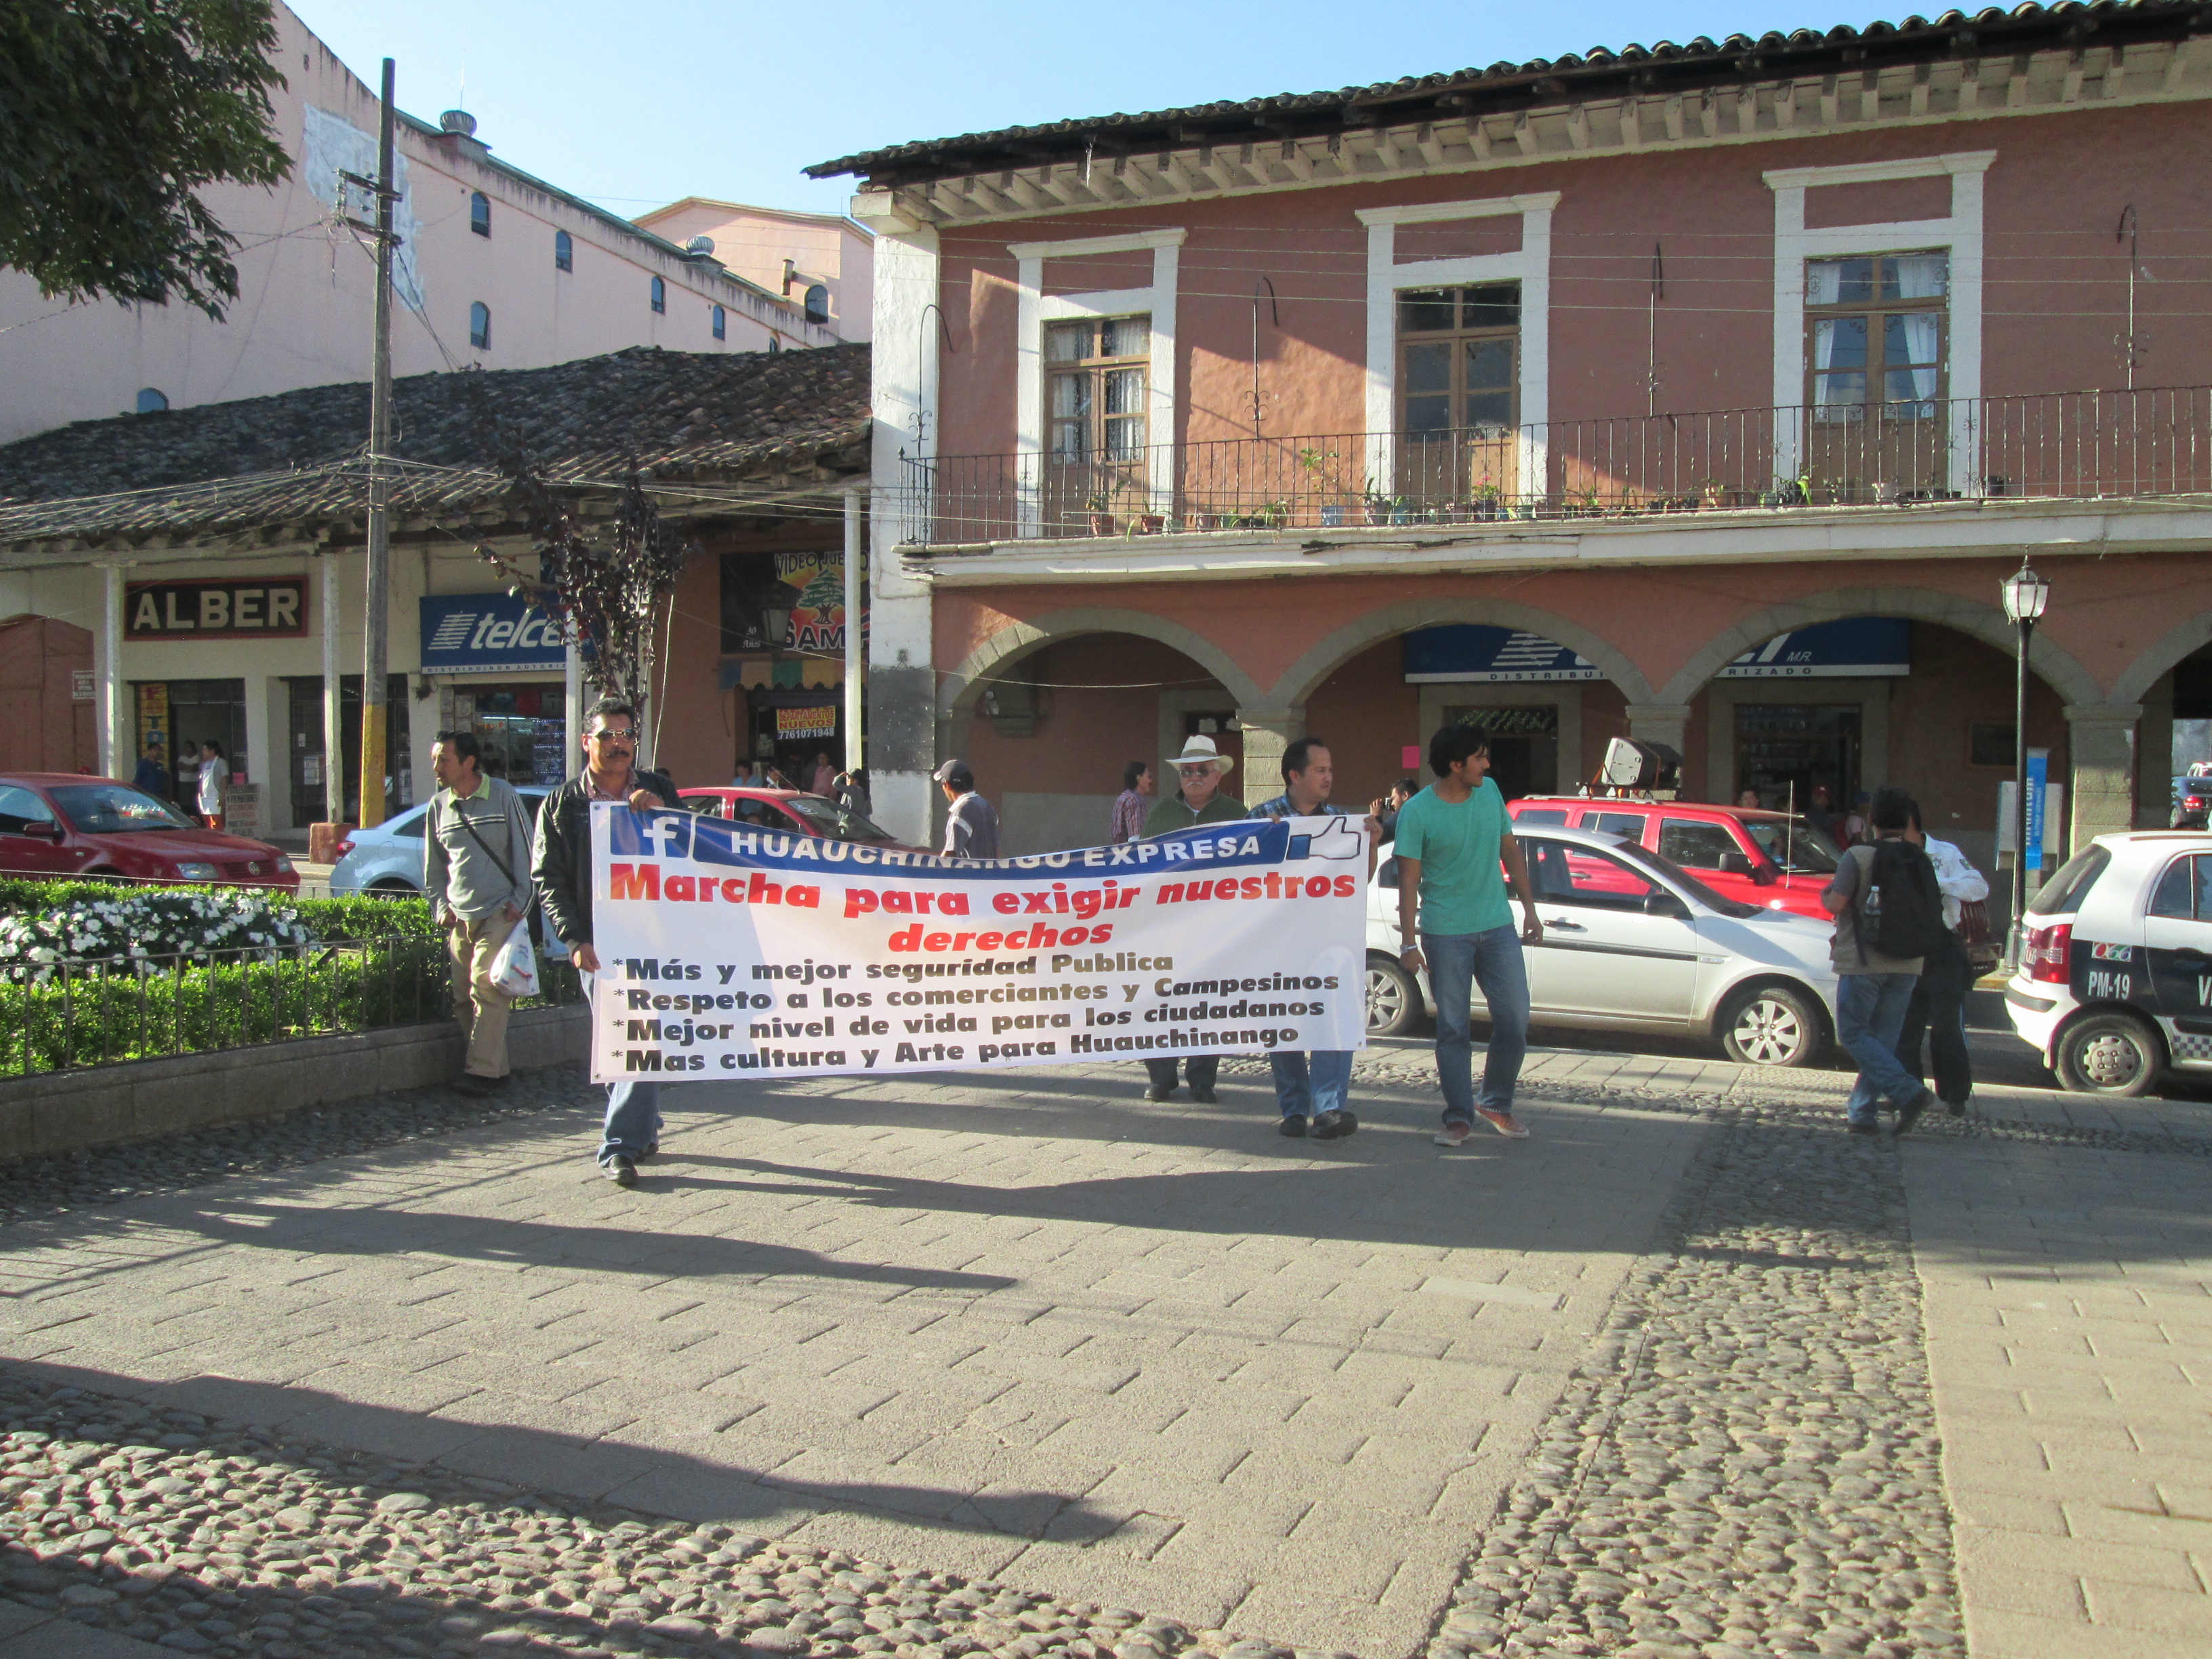 Marcha de 23 personas exige cuentas a comuna de Huauchinango